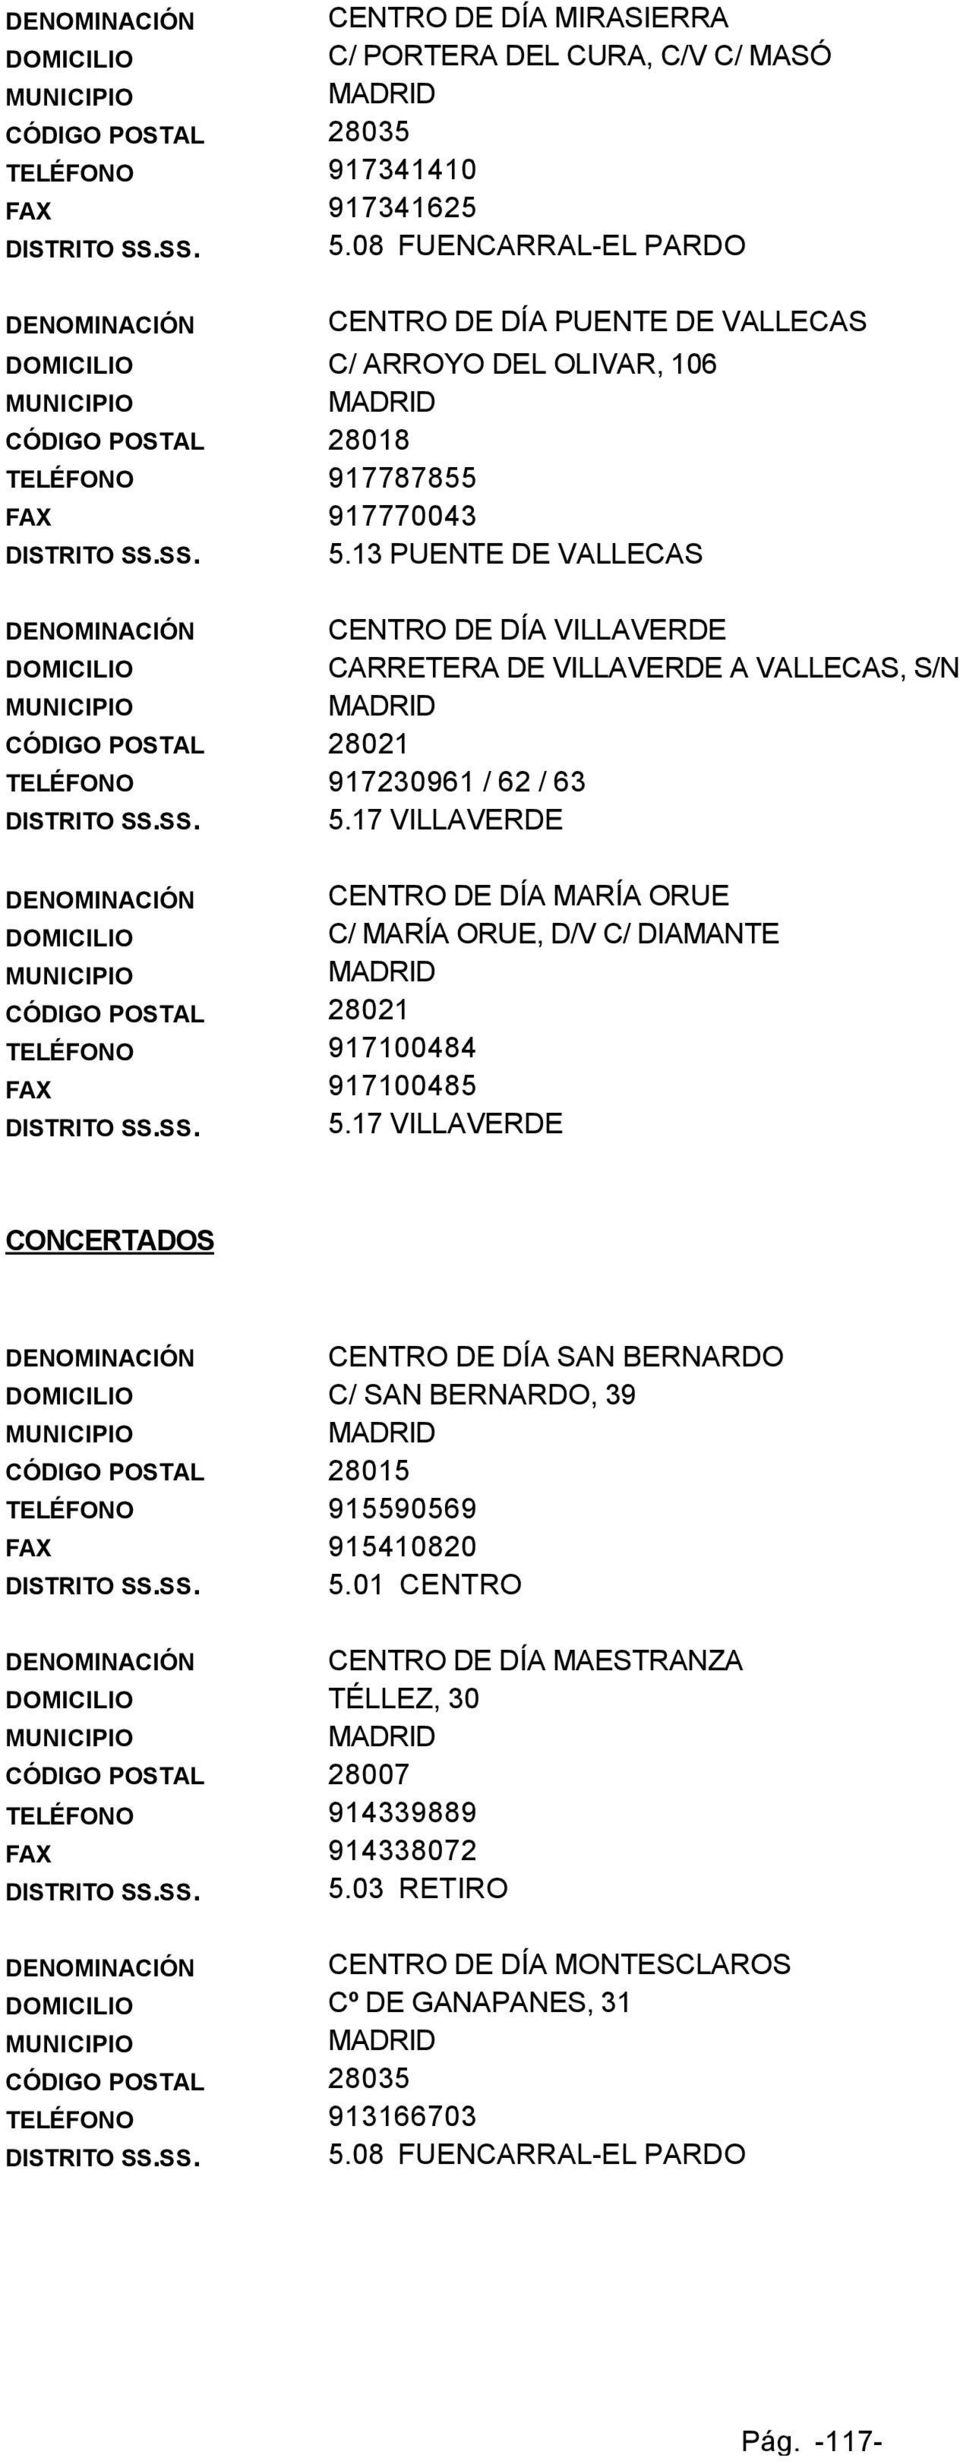 13 PUENTE DE VALLECAS CENTRO DE DÍA VILLAVERDE CARRETERA DE VILLAVERDE A VALLECAS, S/N CÓDIGO POSTAL 28021 TELÉFONO 917230961 / 62 / 63 DISTRITO SS.SS. 5.